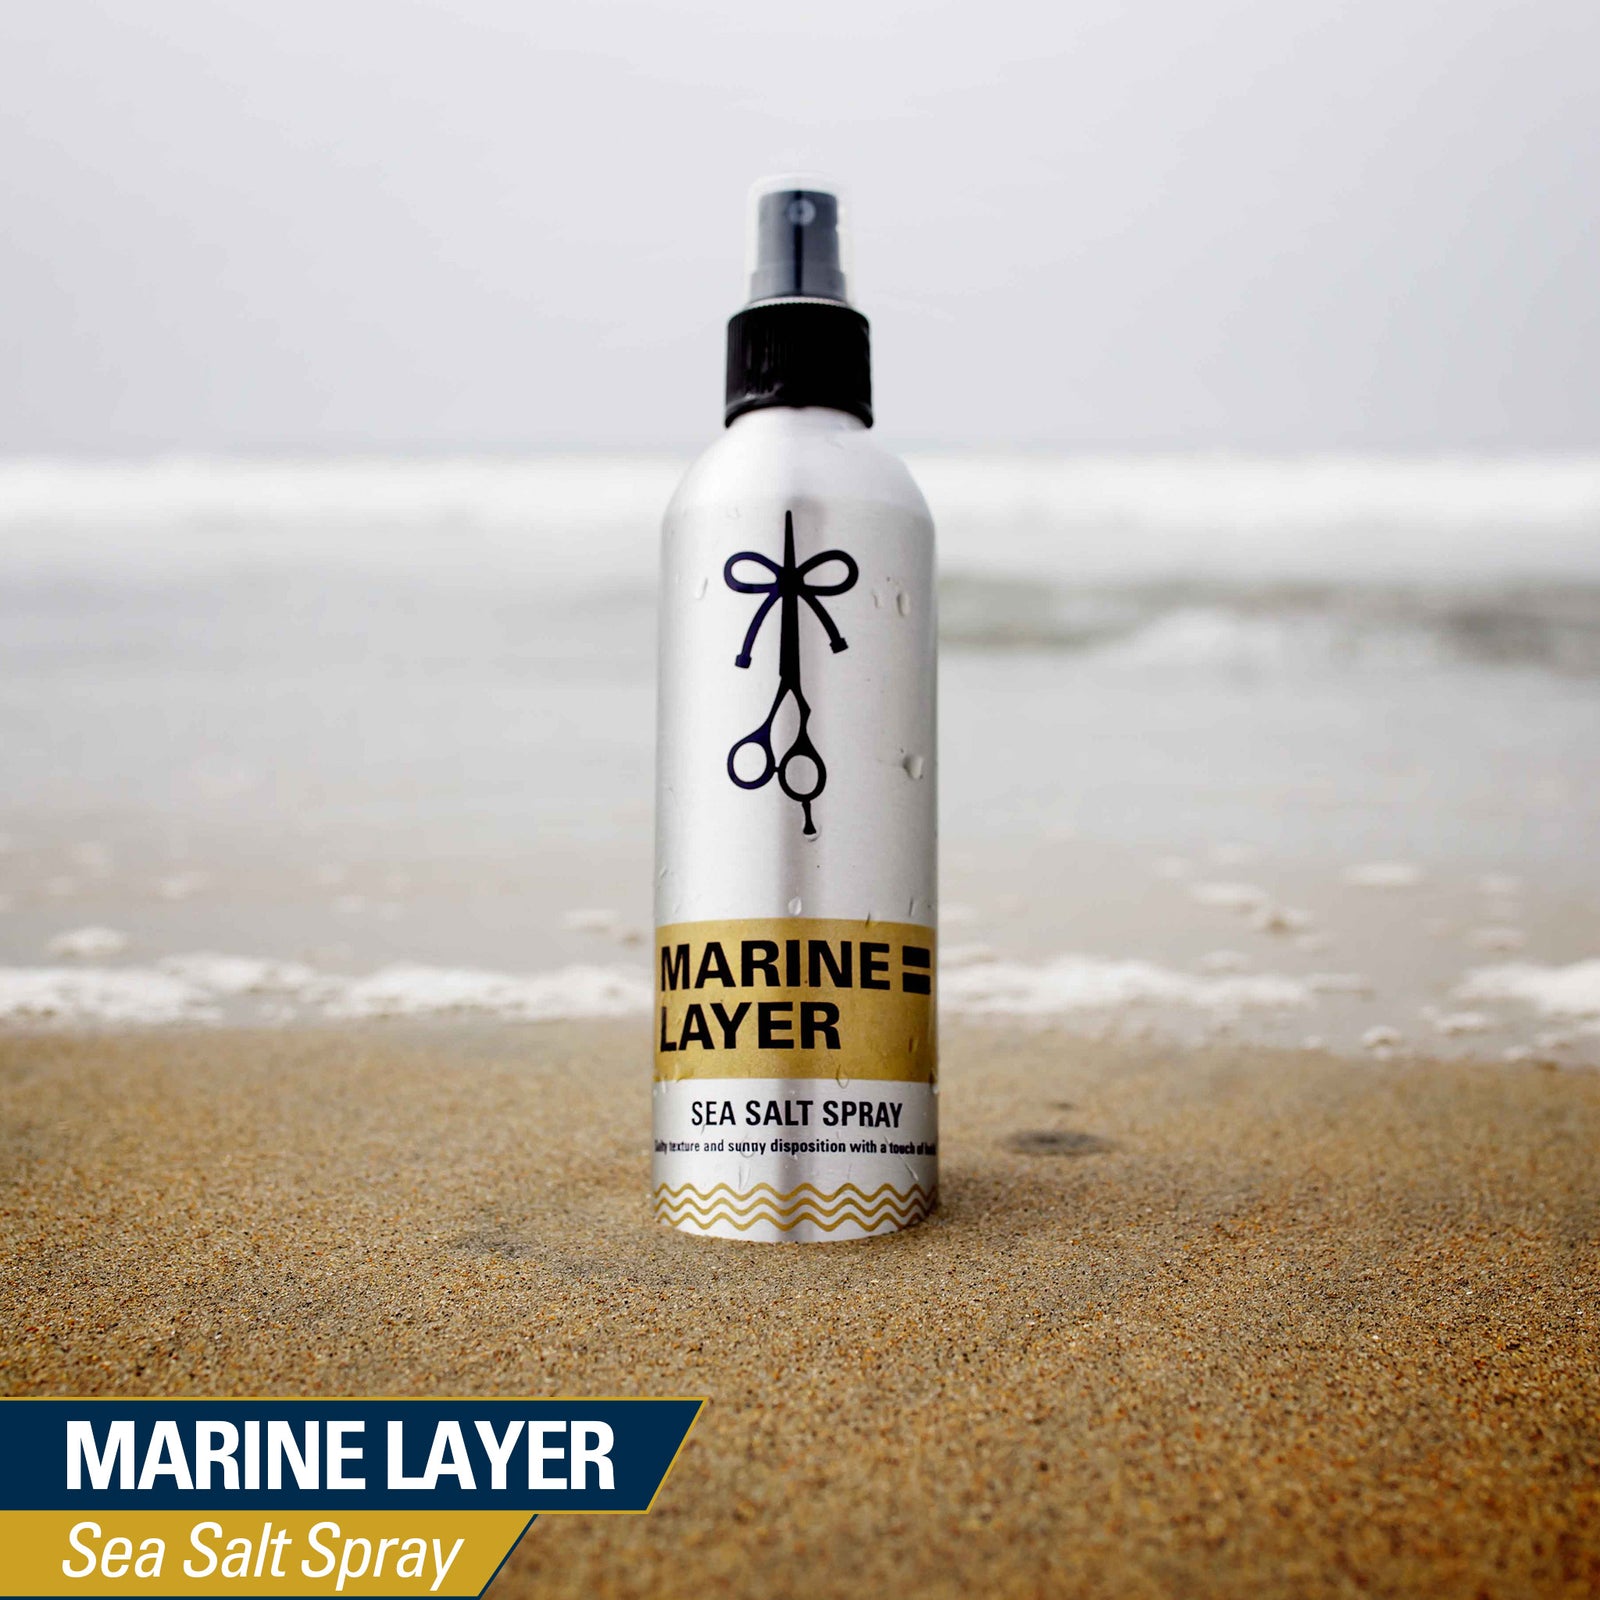 The Longhairs Marine Layer Sea Salt Spray